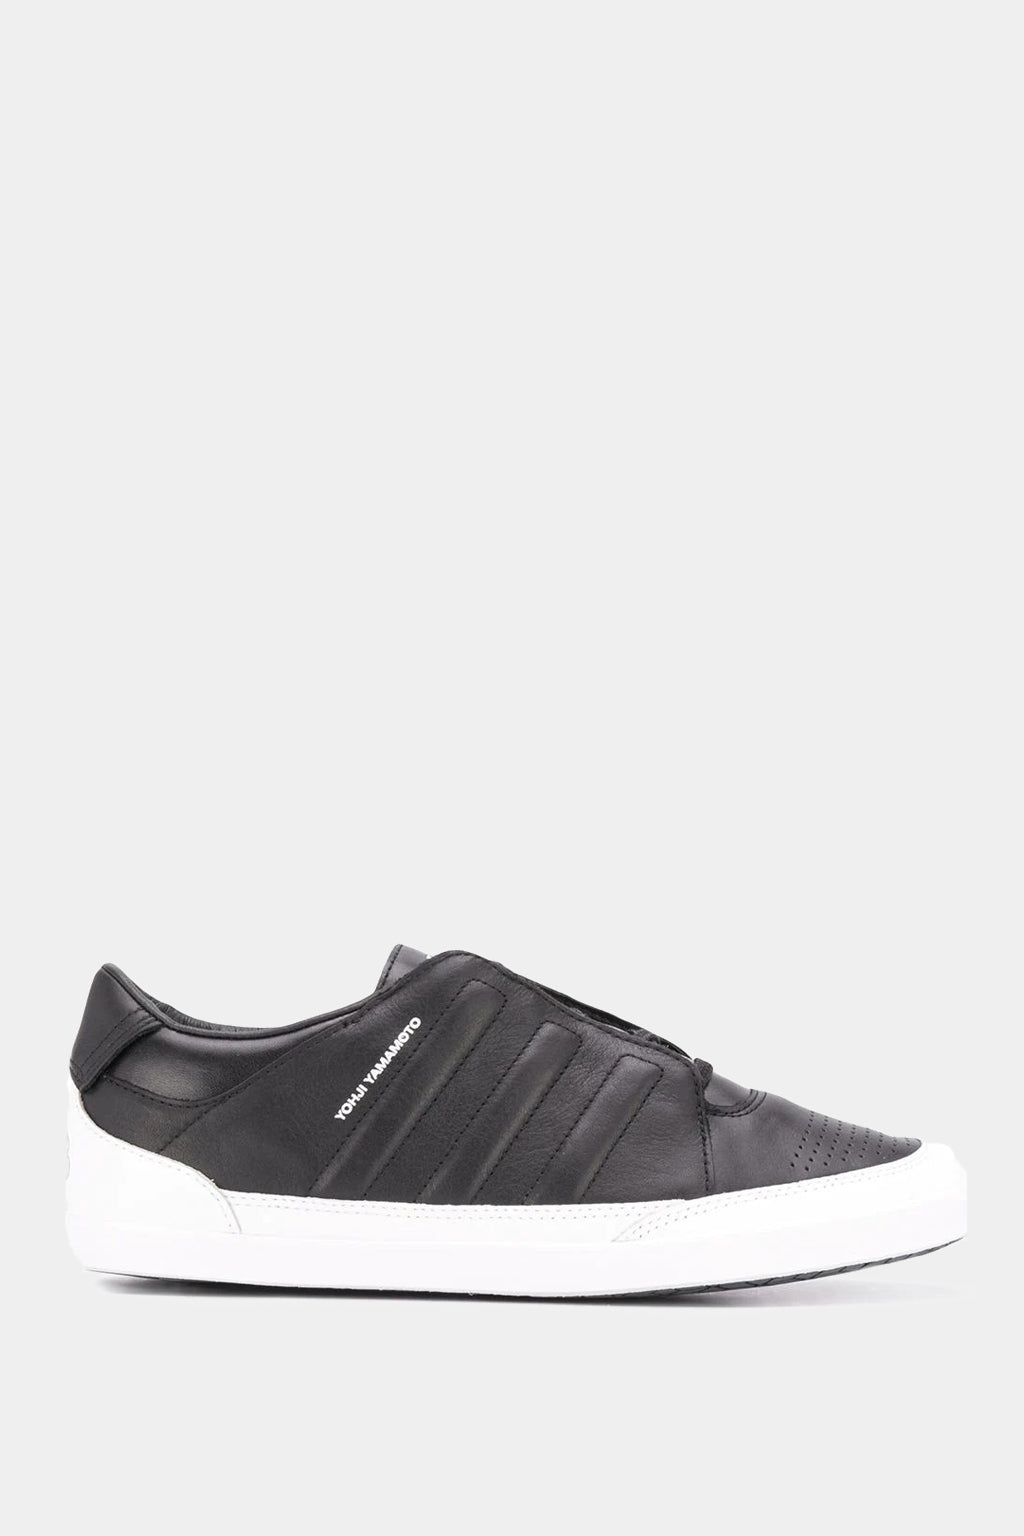 Adidas - Y-3 Honja Low Sneakers